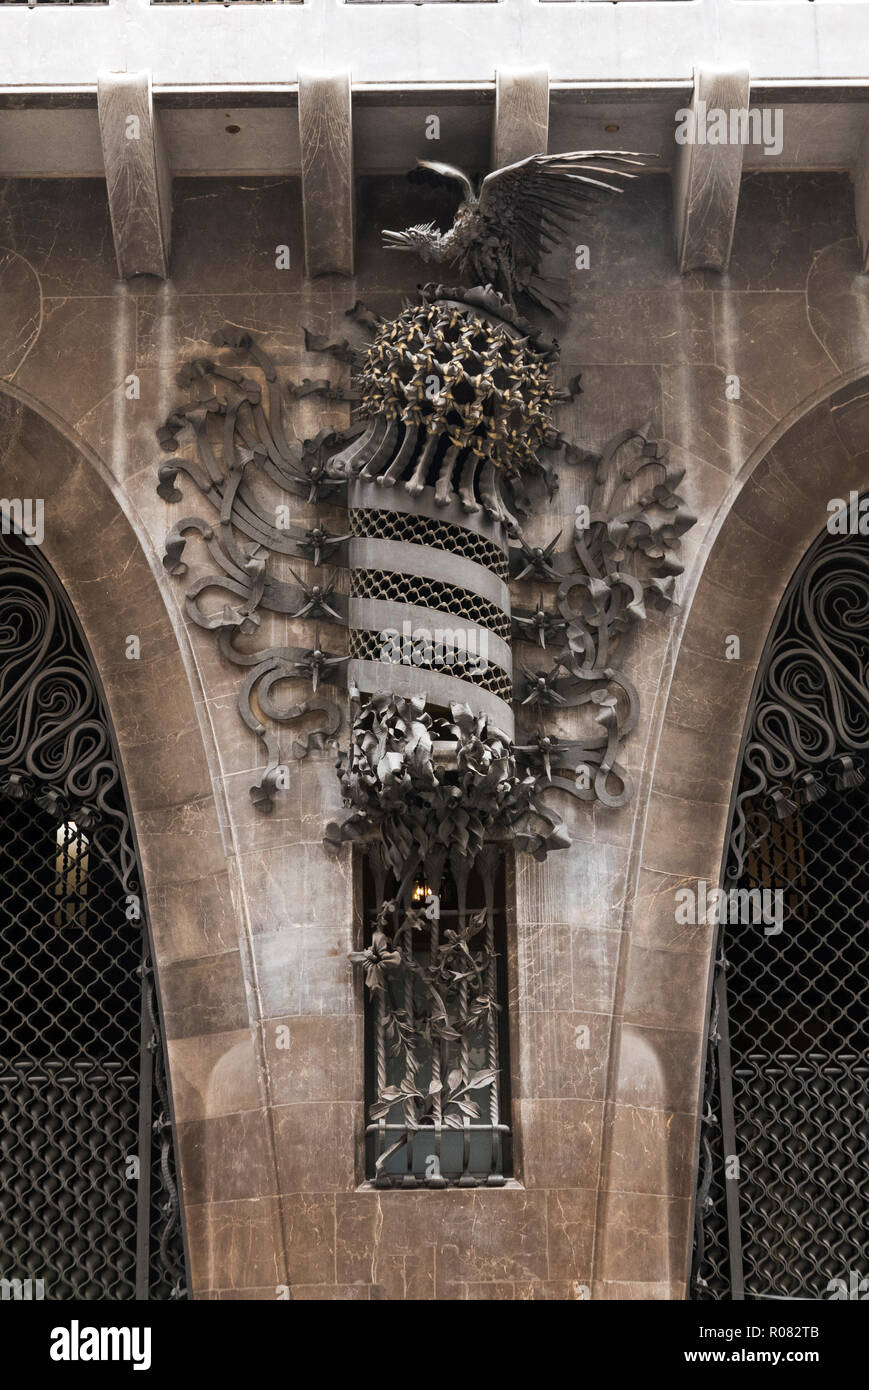 Ornement décorative en métal avec un oiseau sur l'le mur de la Palau Guell bâtiment conçu par Antoni Gaudi, Barcelone, Espagne Banque D'Images